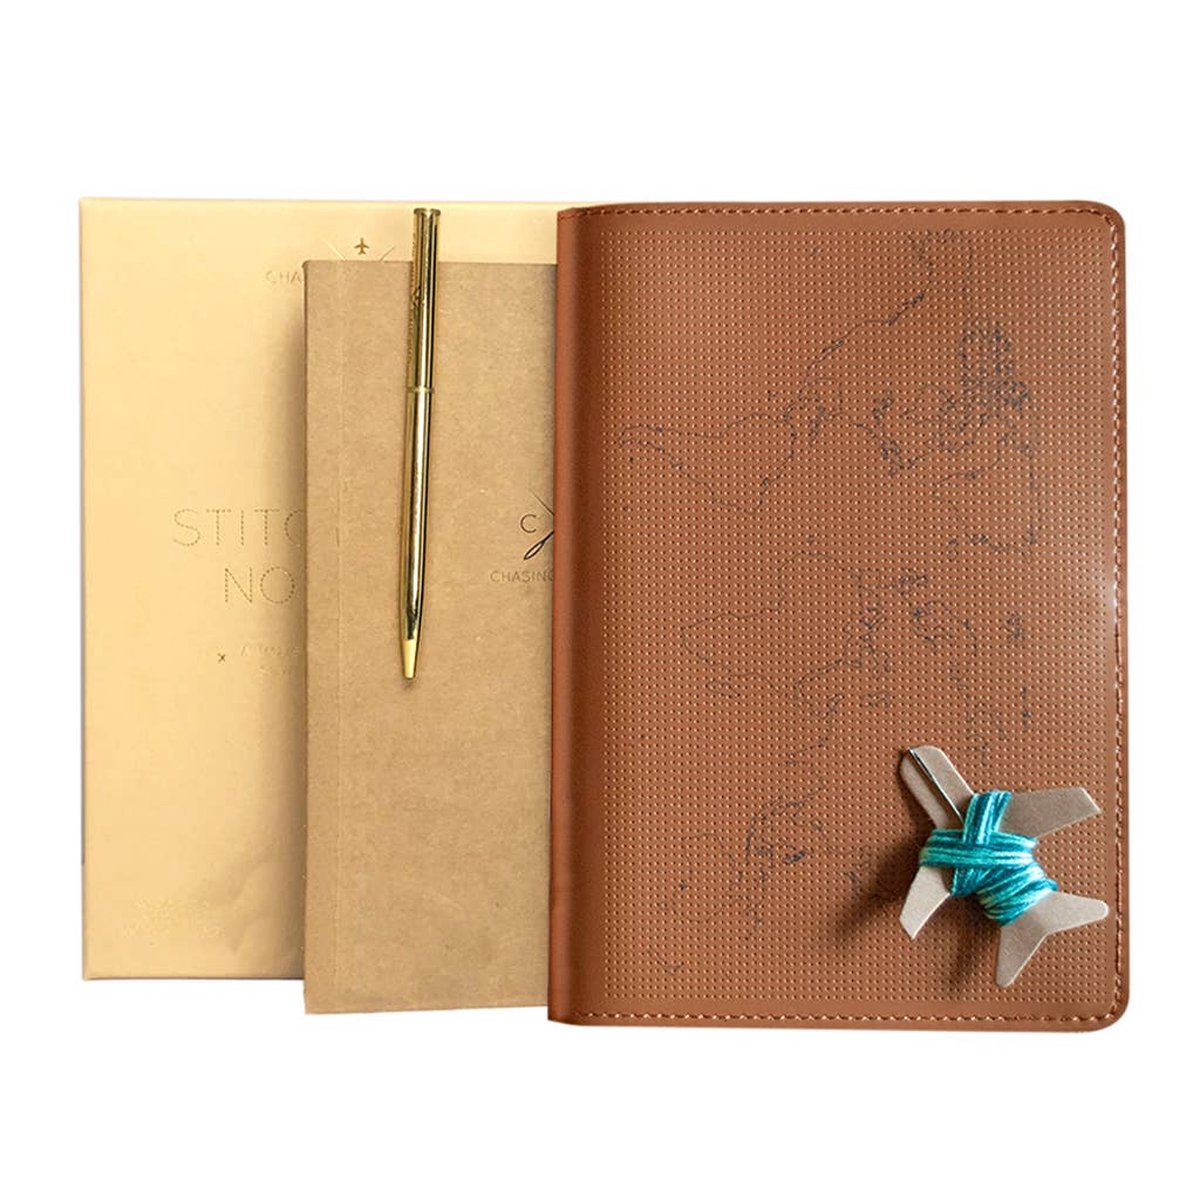 Chasing threads stitch your travels notebook met naald en draad | Notitieboek